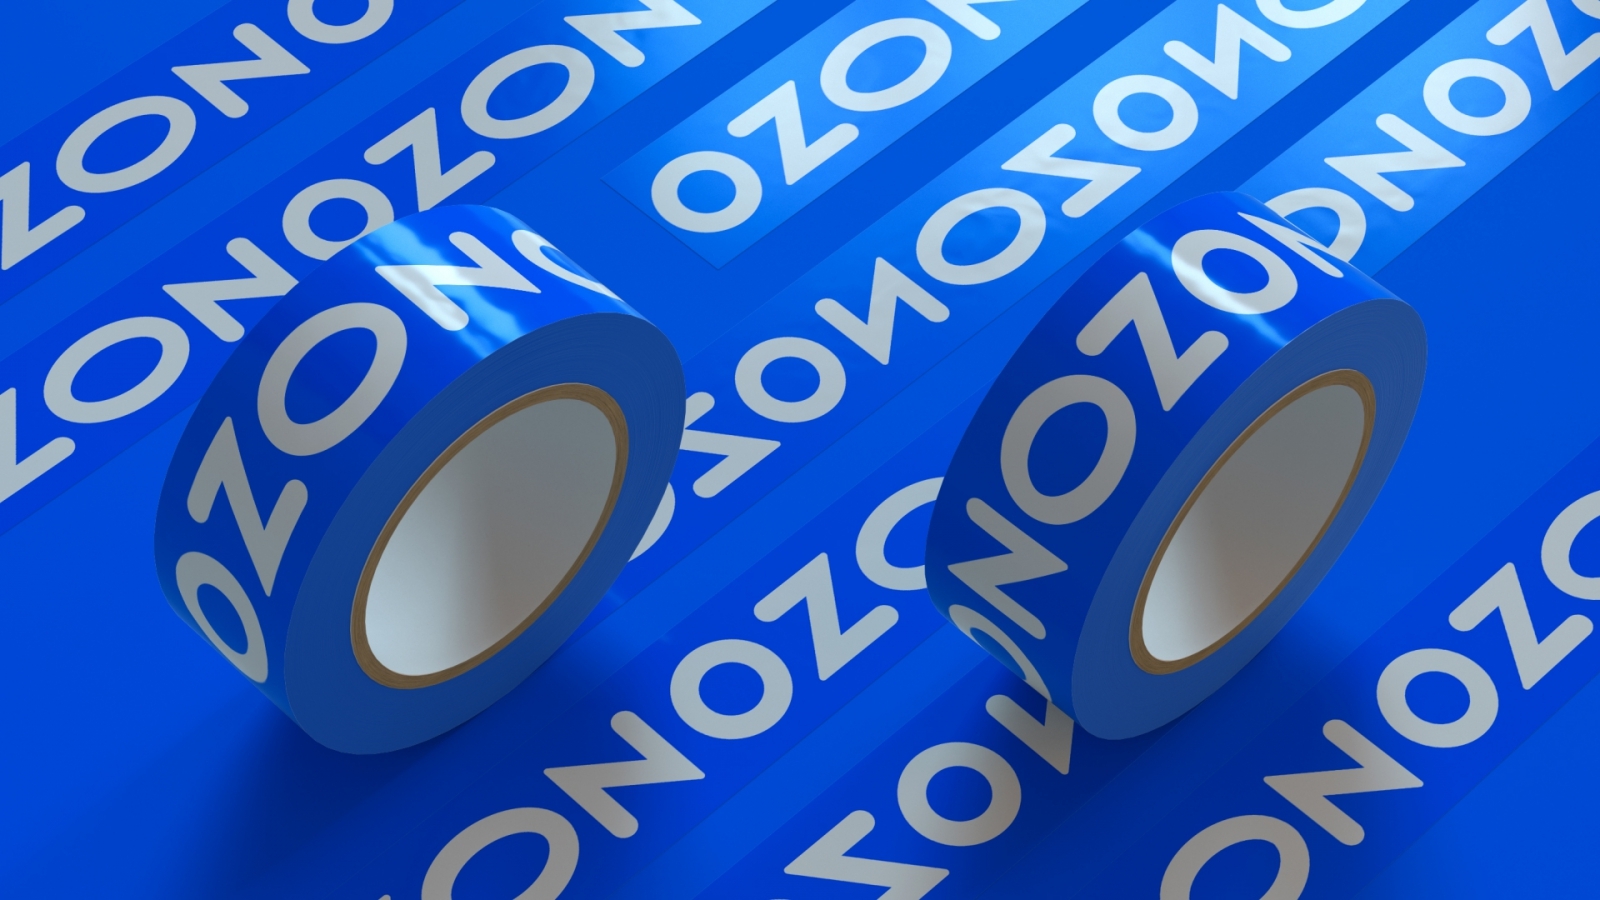 Озон меняет логотип и фирменный стиль